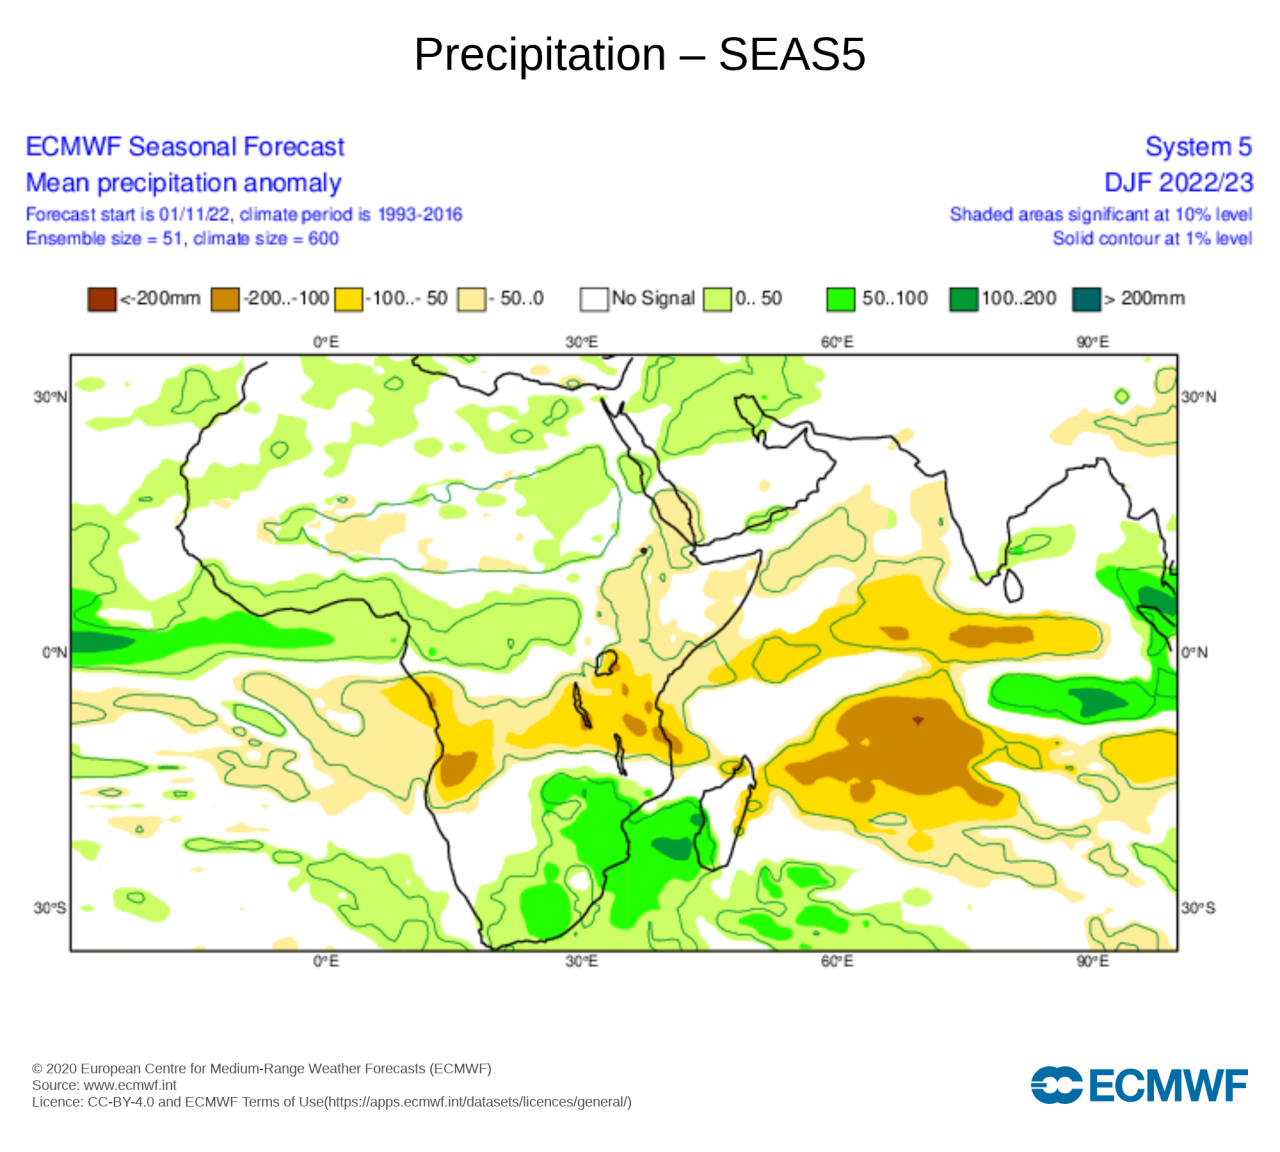 attese precipitazioni sotto media in inverno per il Corno d'Africa, fonte Ecmwf